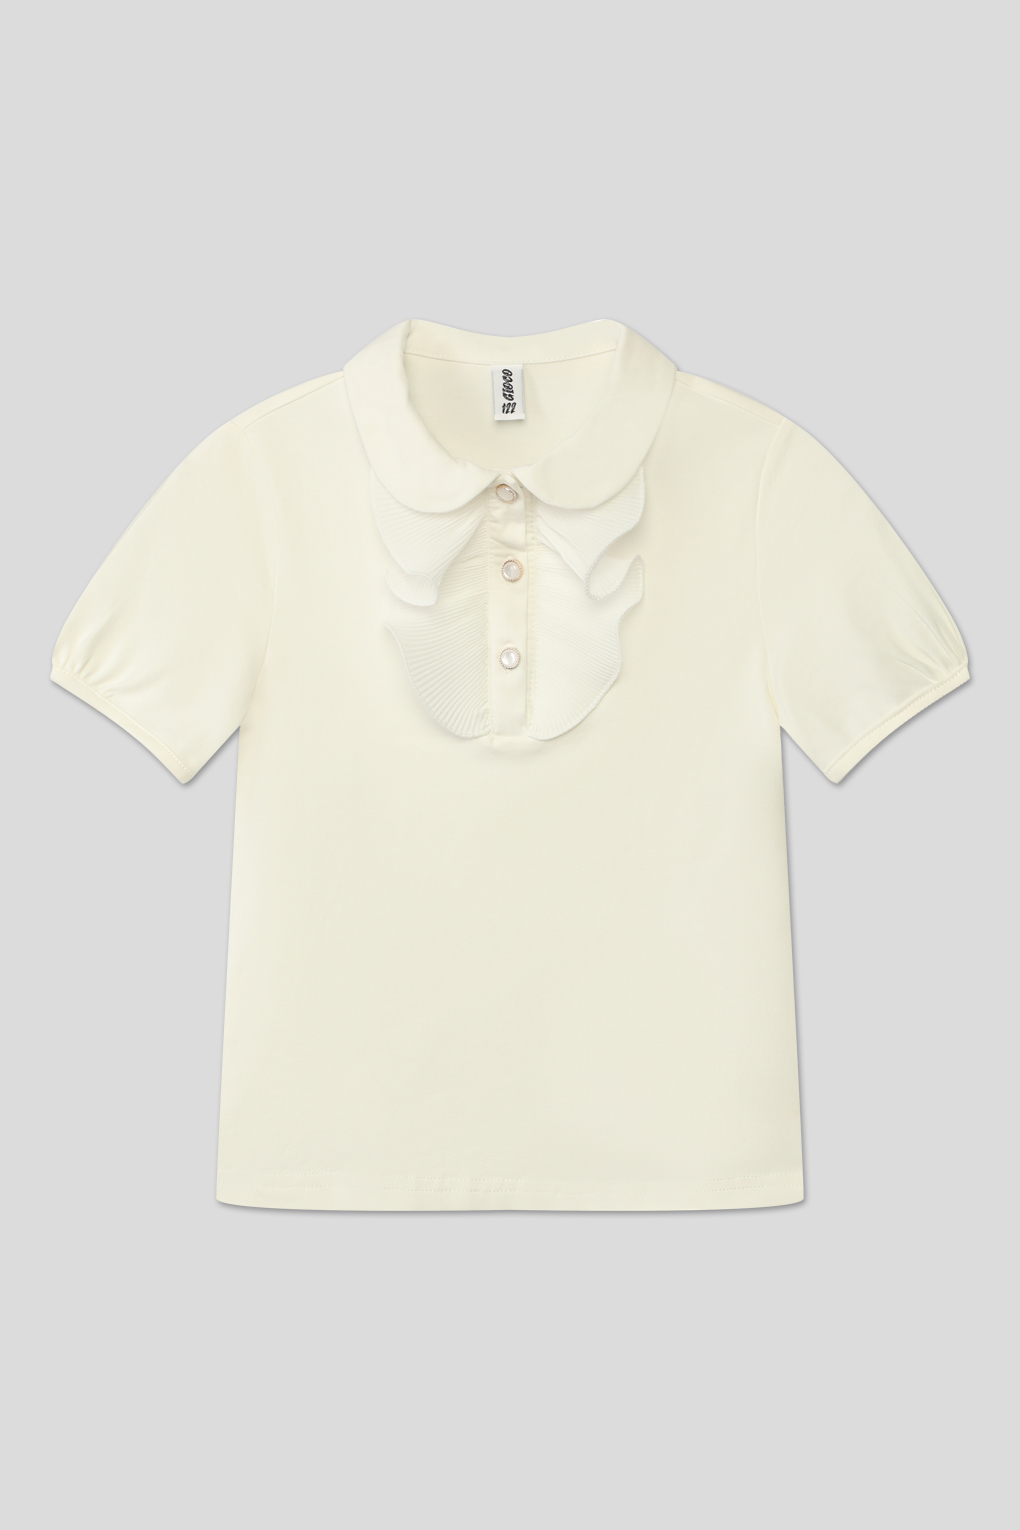 блуза трикотажная GIOCO G23063485-025 молочный для девочек, цвет Молочный р.134